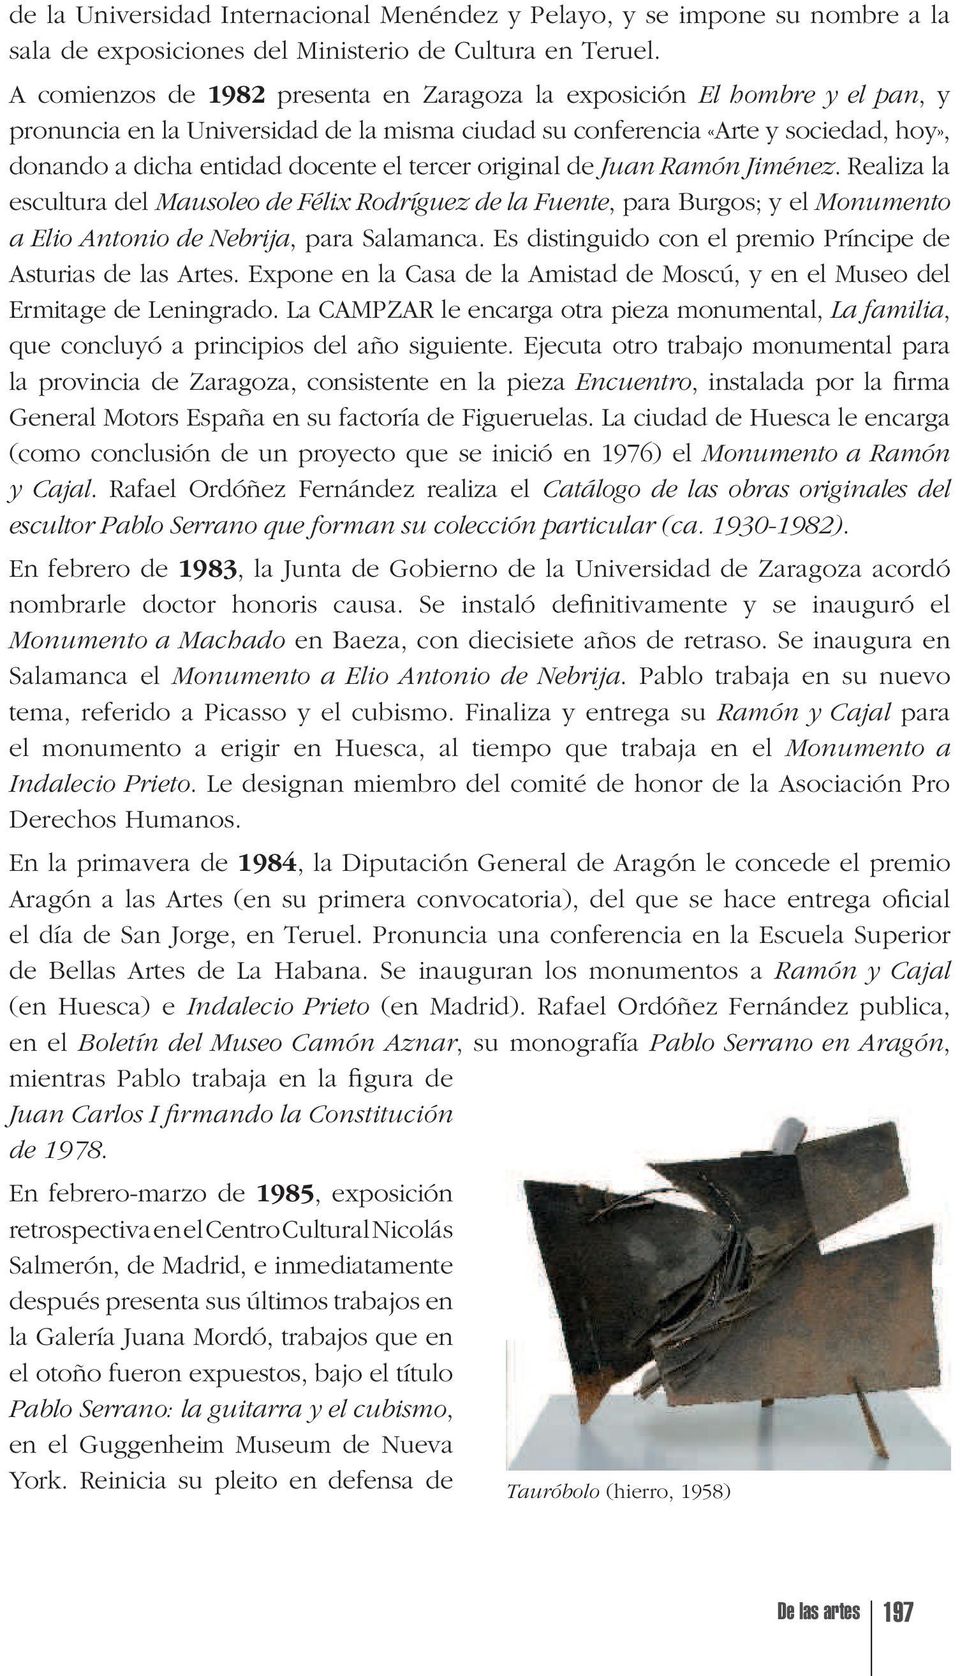 tercer original de Juan Ramón Jiménez. Realiza la escultura del Mausoleo de Félix Rodríguez de la Fuente, para Burgos; y el Monumento a Elio Antonio de Nebrija, para Salamanca.